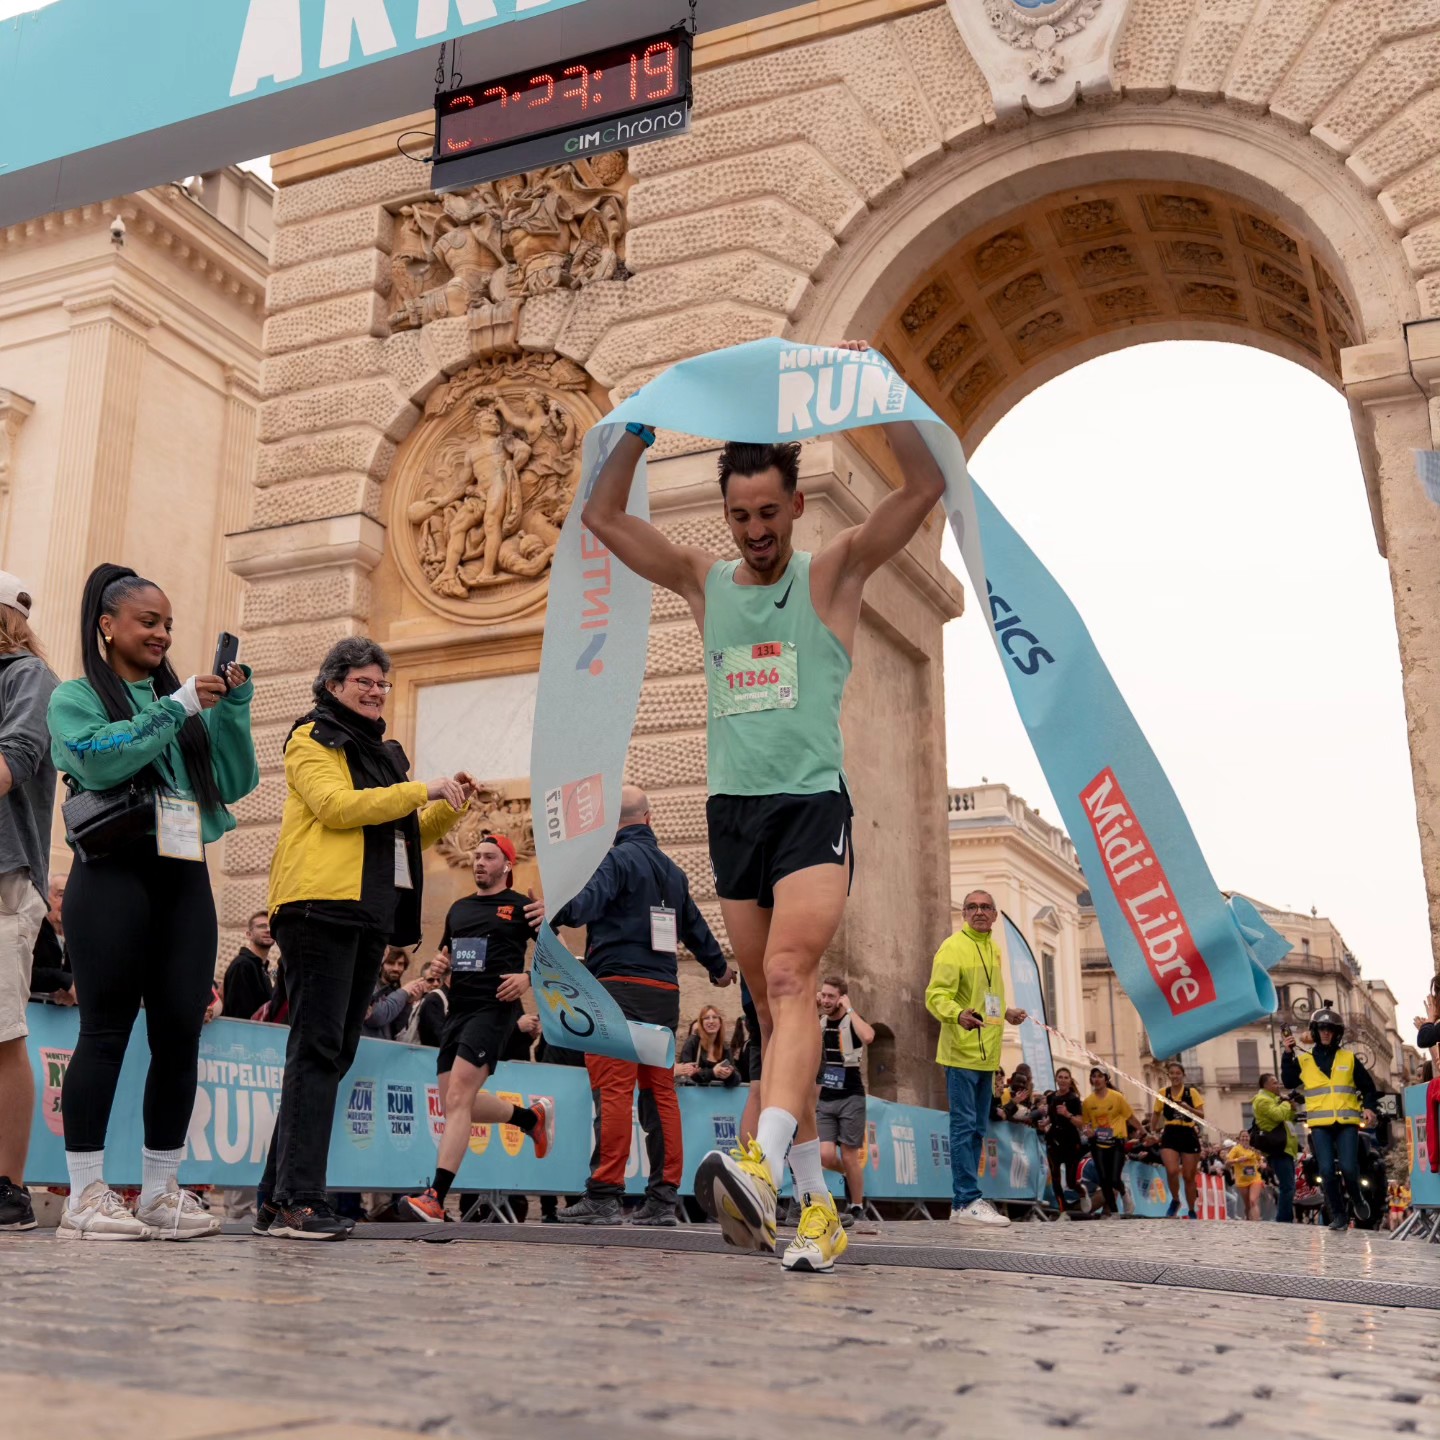 Montpellier Run Festival - Arrivée du 1er marathonien